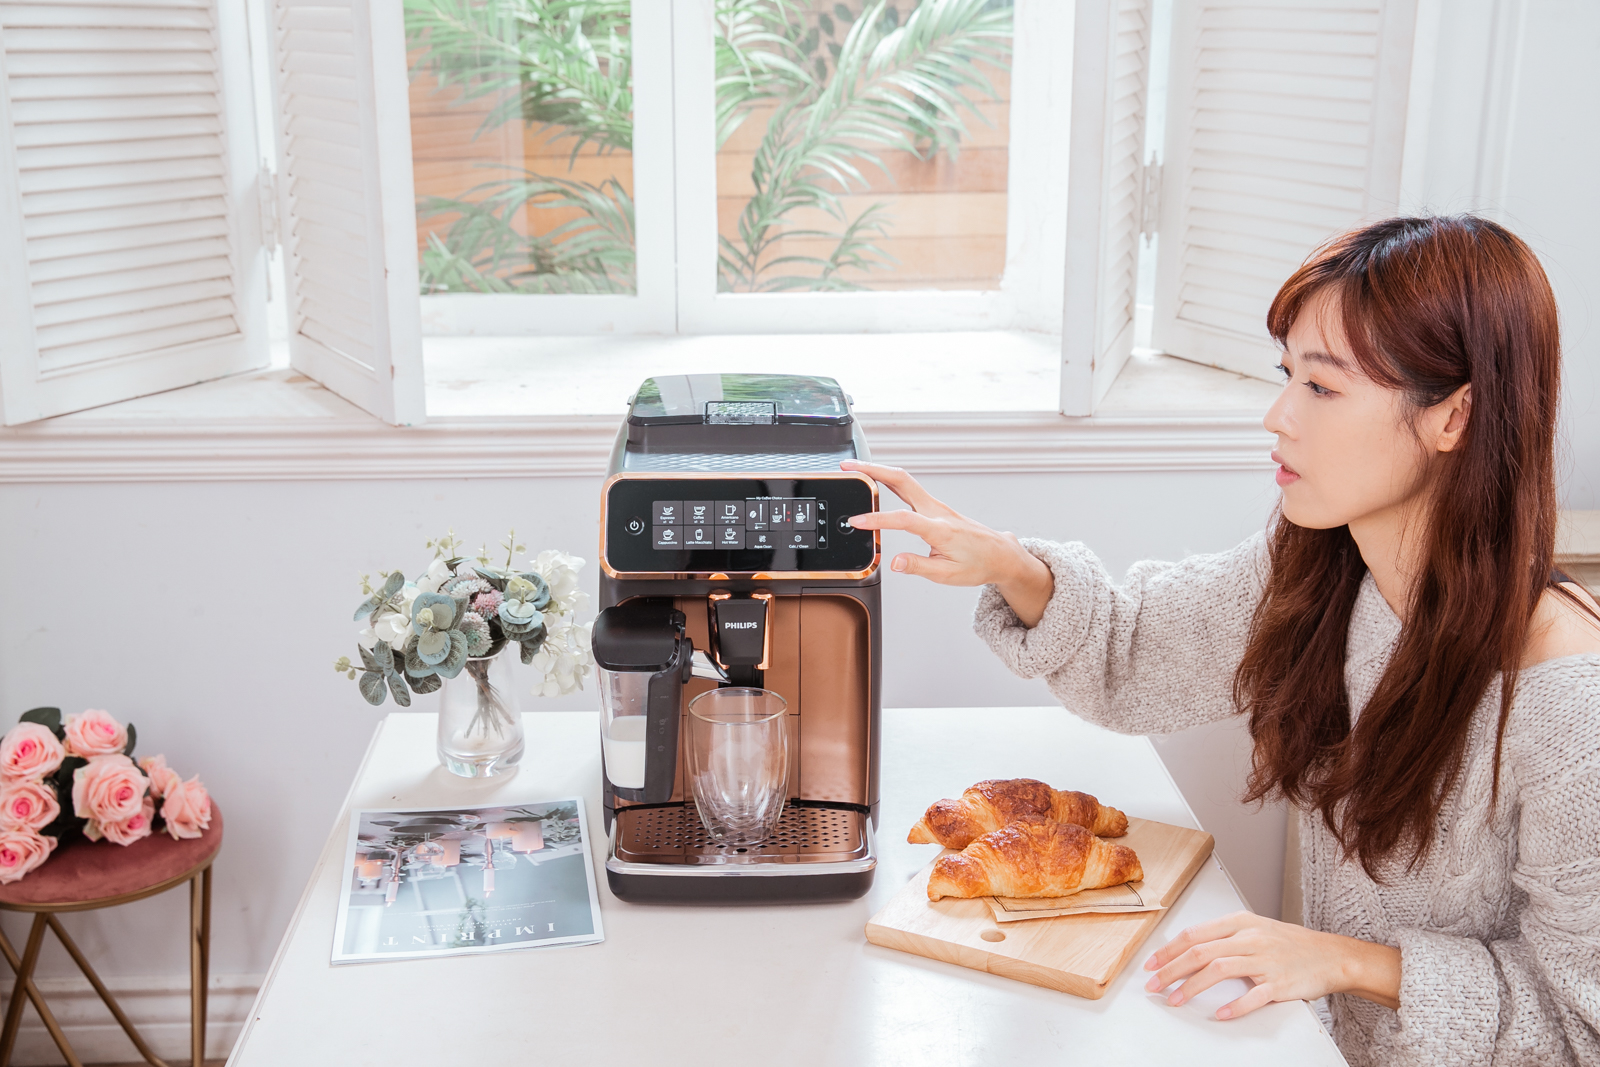 飛利浦全自動義式咖啡機 LatteGo EP3246 無管線雲朵拿鐵咖啡機 一鍵享受綿密奶泡咖啡